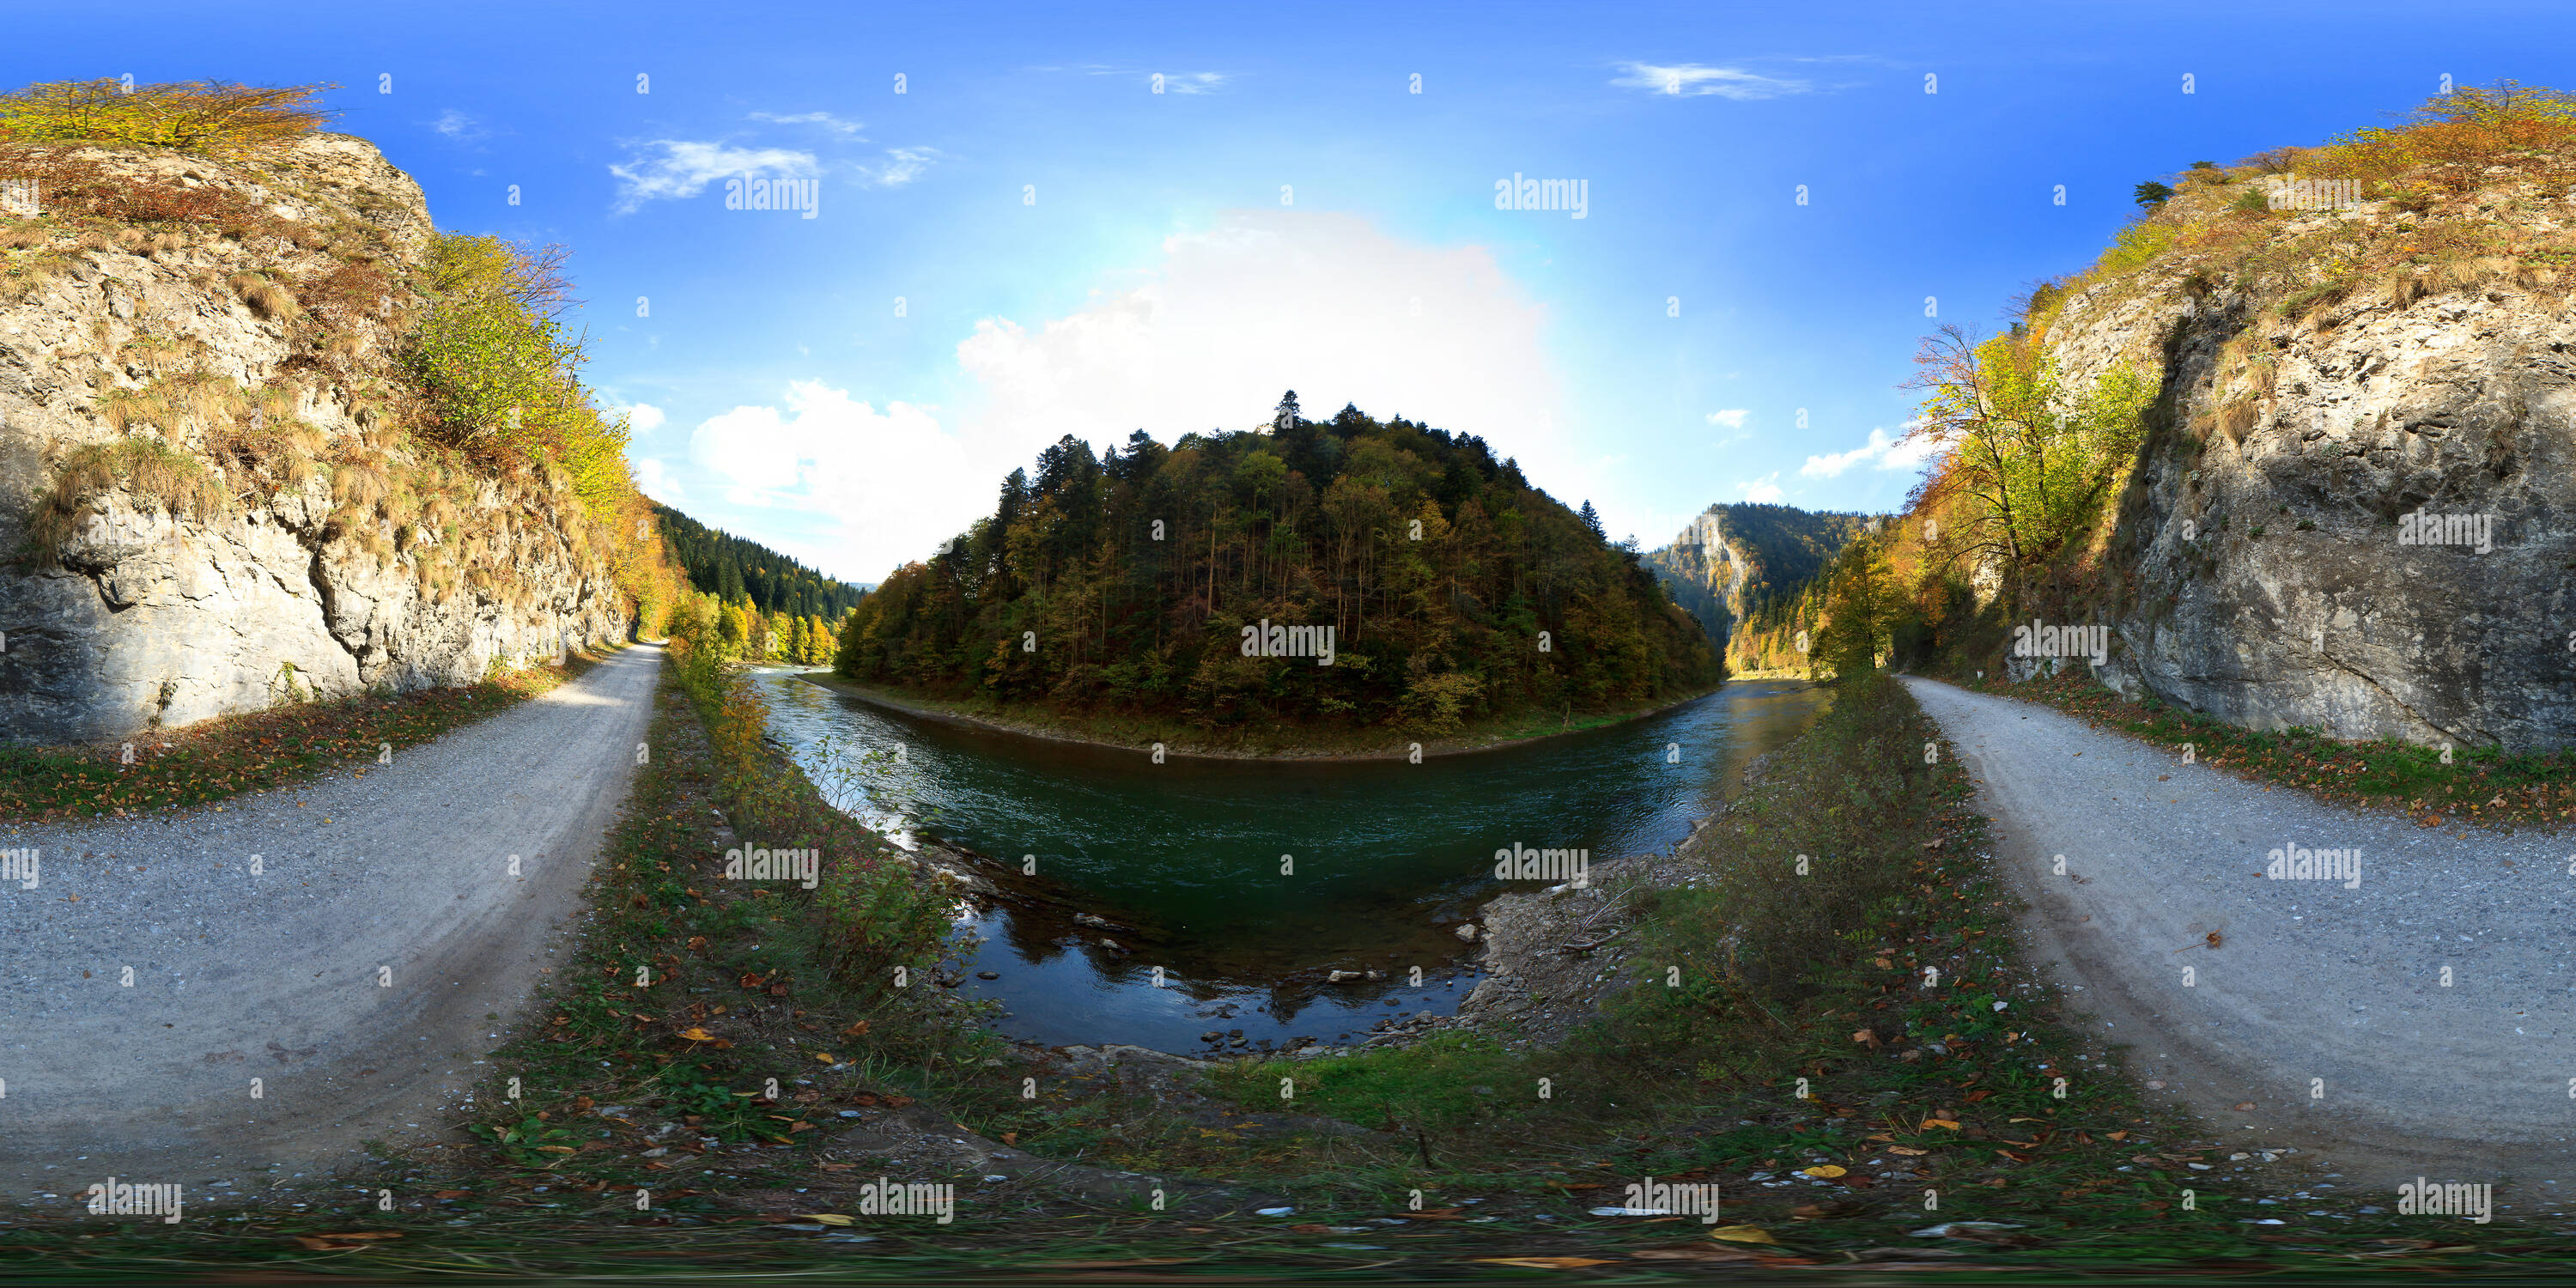 360 degree panoramic view of 360 degree virtual tour of Dunajec River Gorge. The Pieniny Mountains. Poland/Slovakia border.